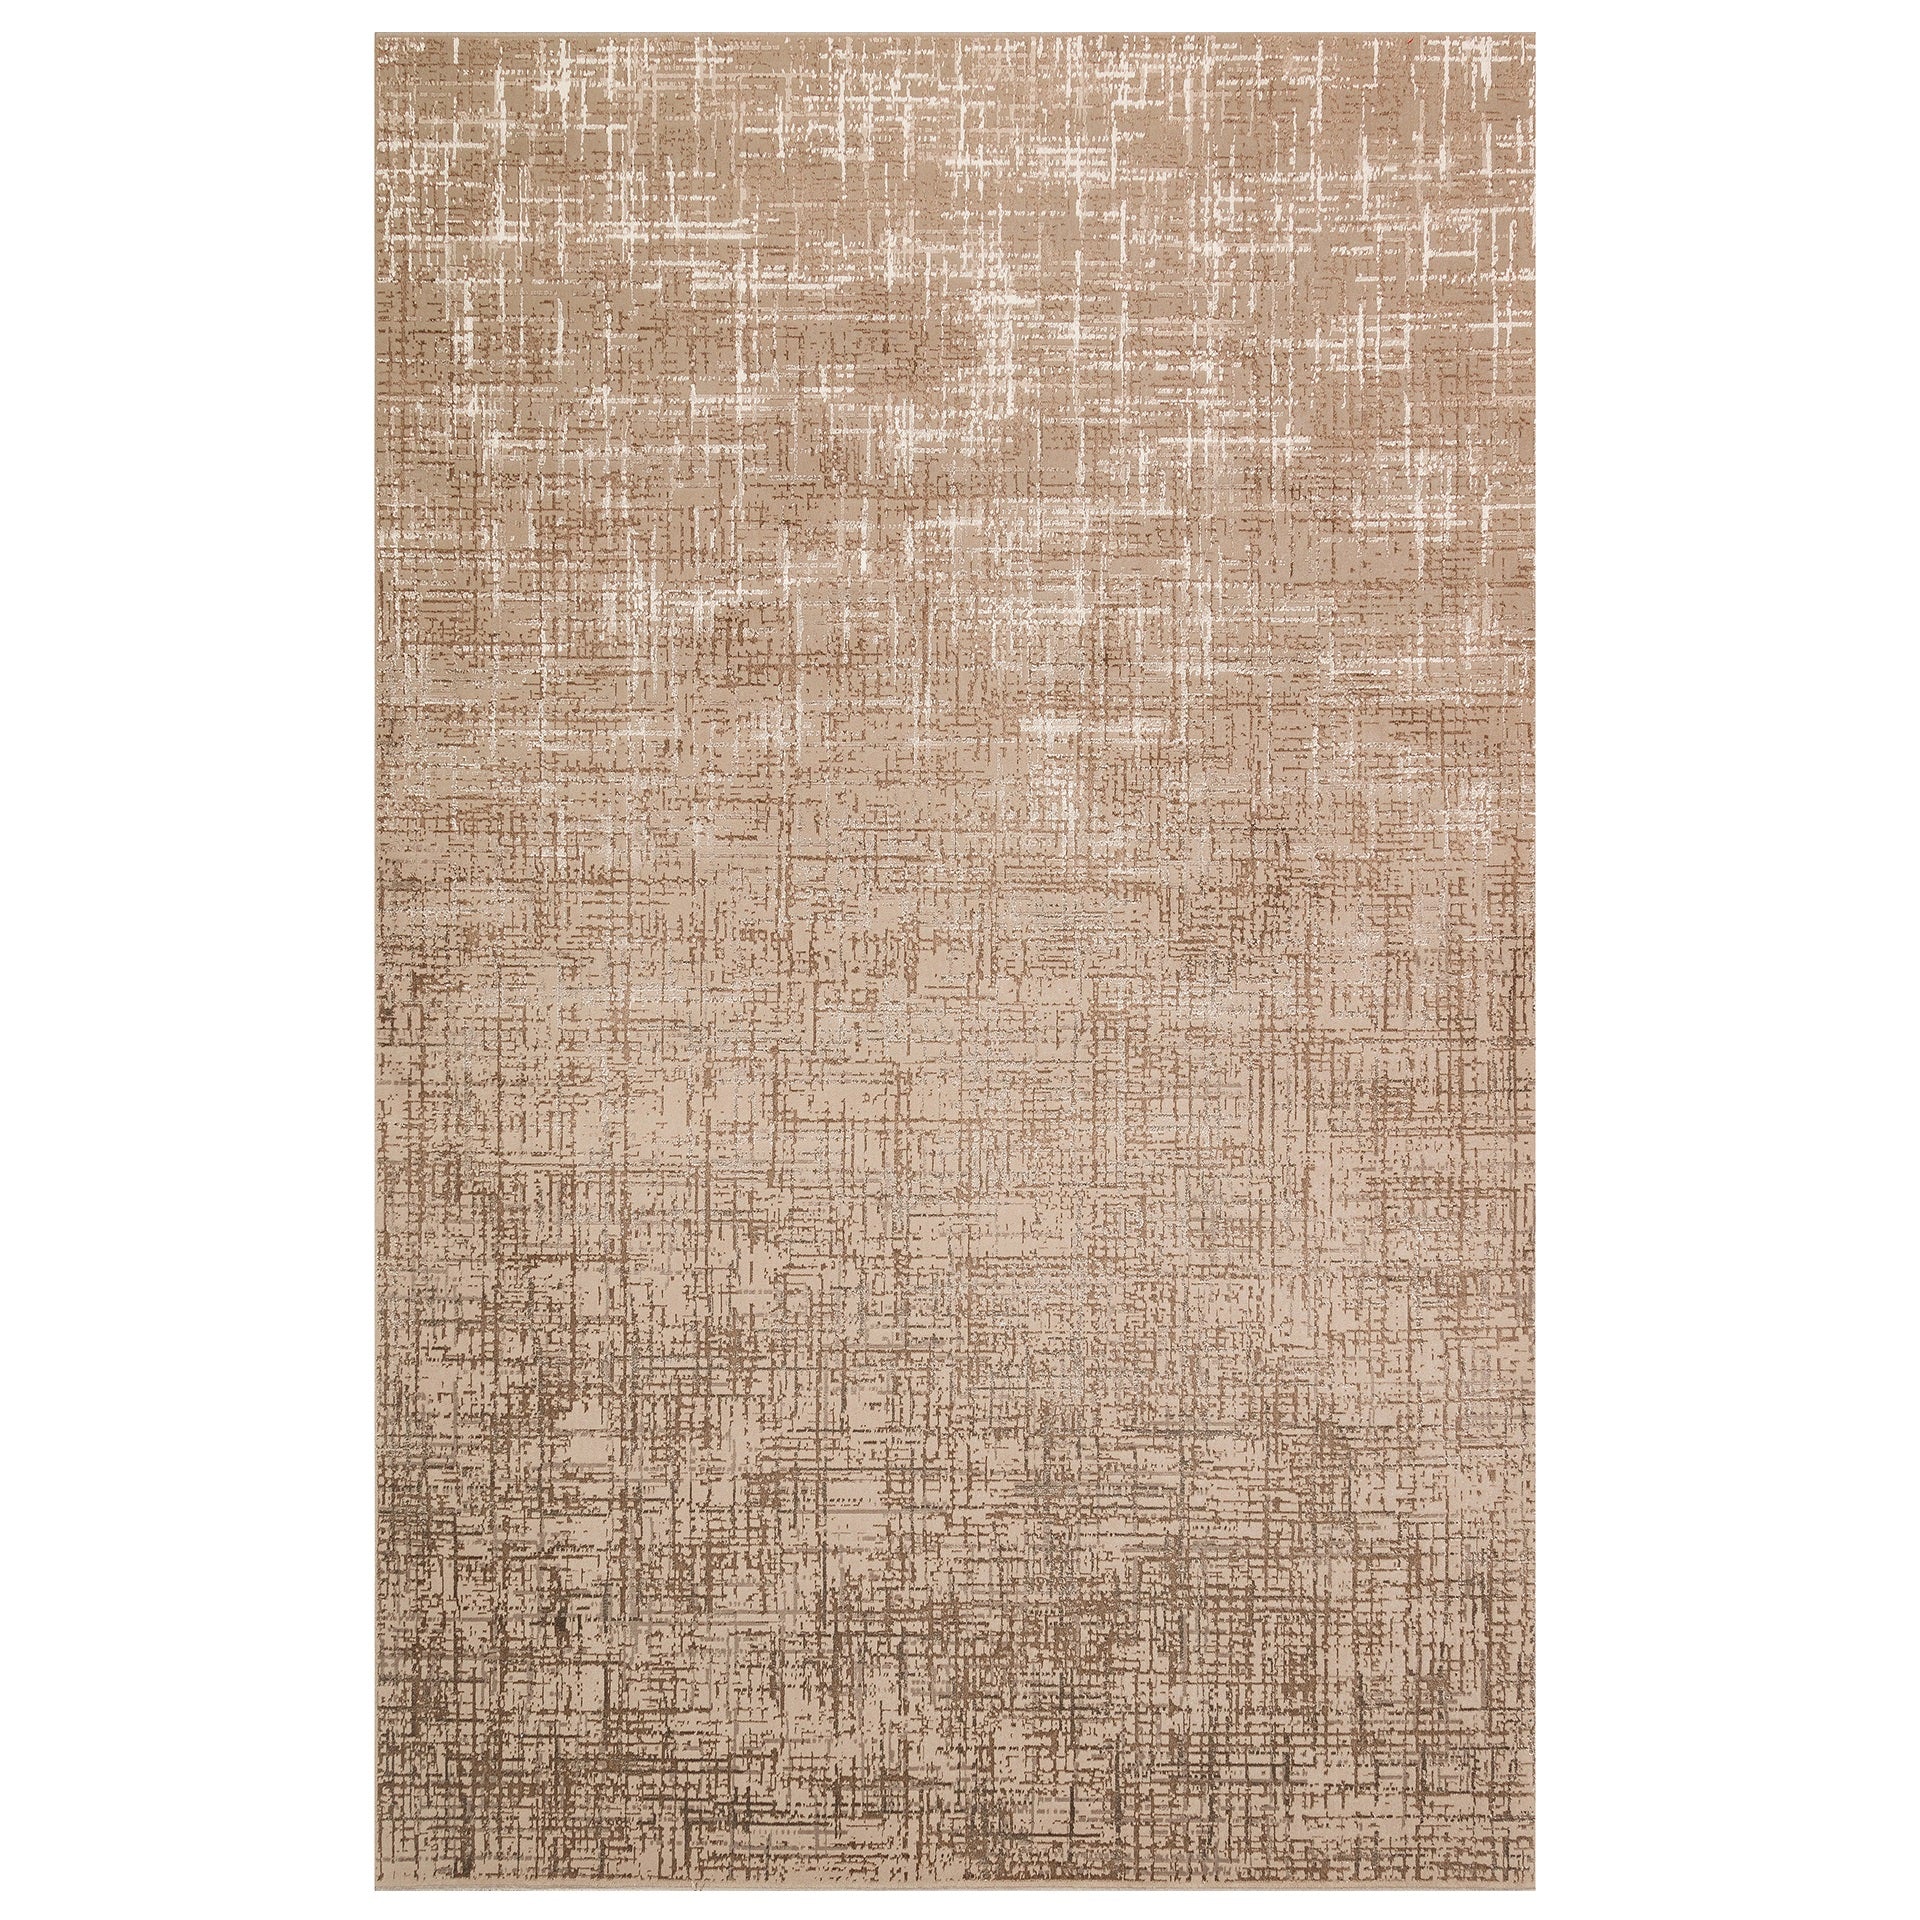 Teppich Byblos mandelfarben von Richmond; rechteckiger Teppich aus glänzendem Material.